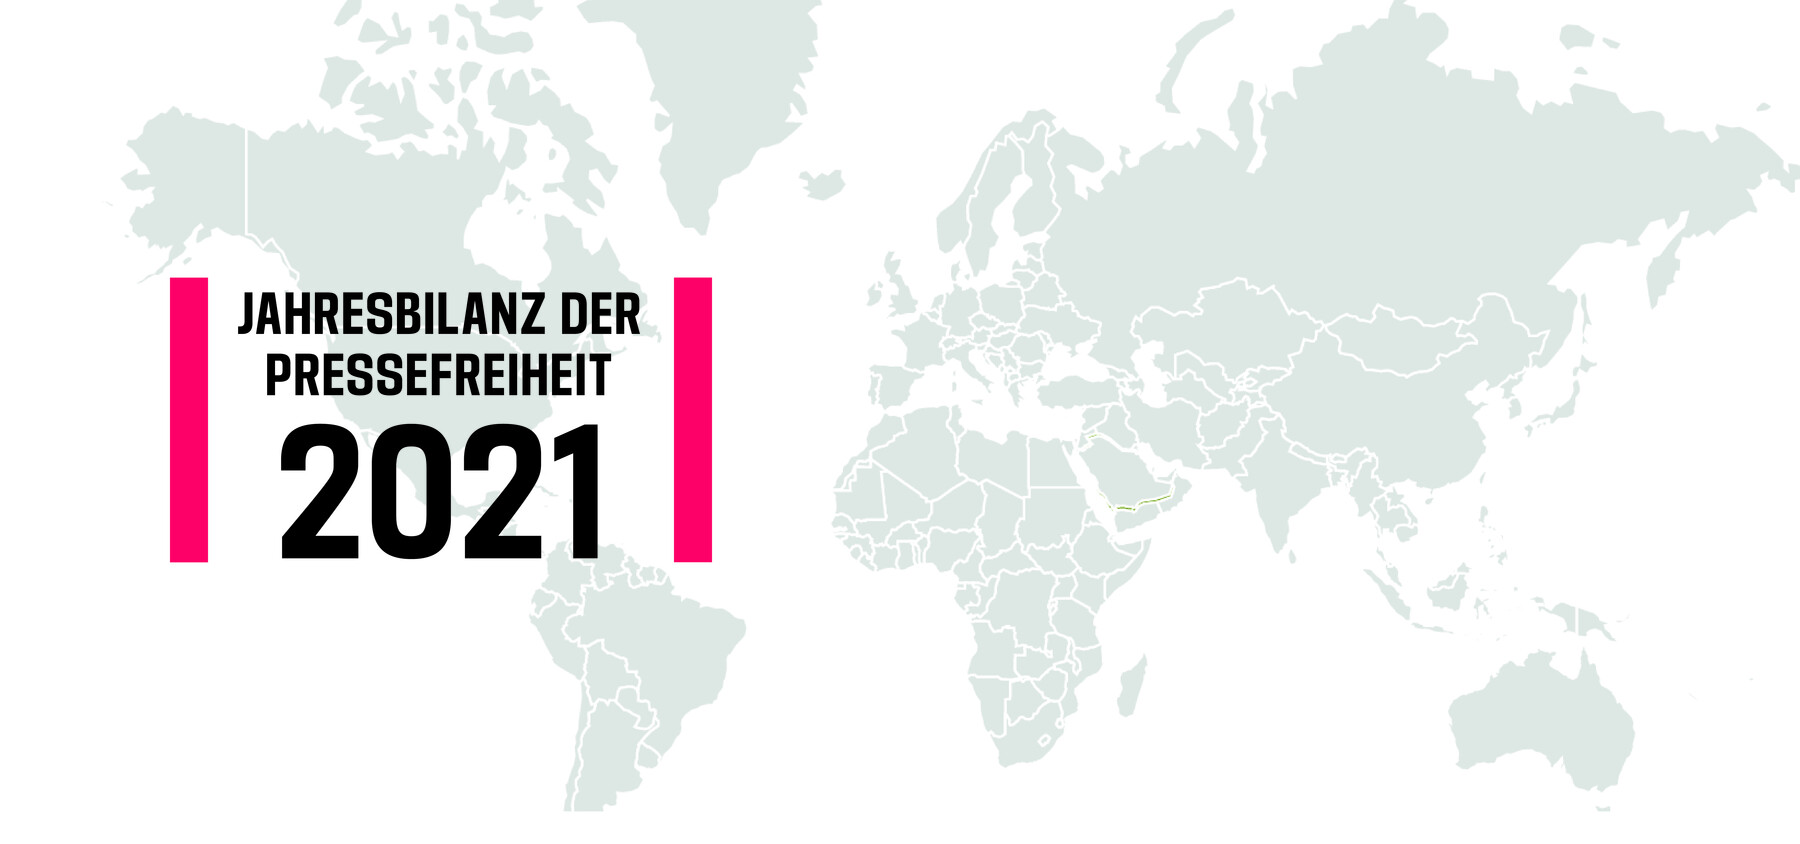 Fette Lettern vor dem Hintergrund eines Weltkartenausschnitts: Jahresbilanz der Pressefreiheit 2021